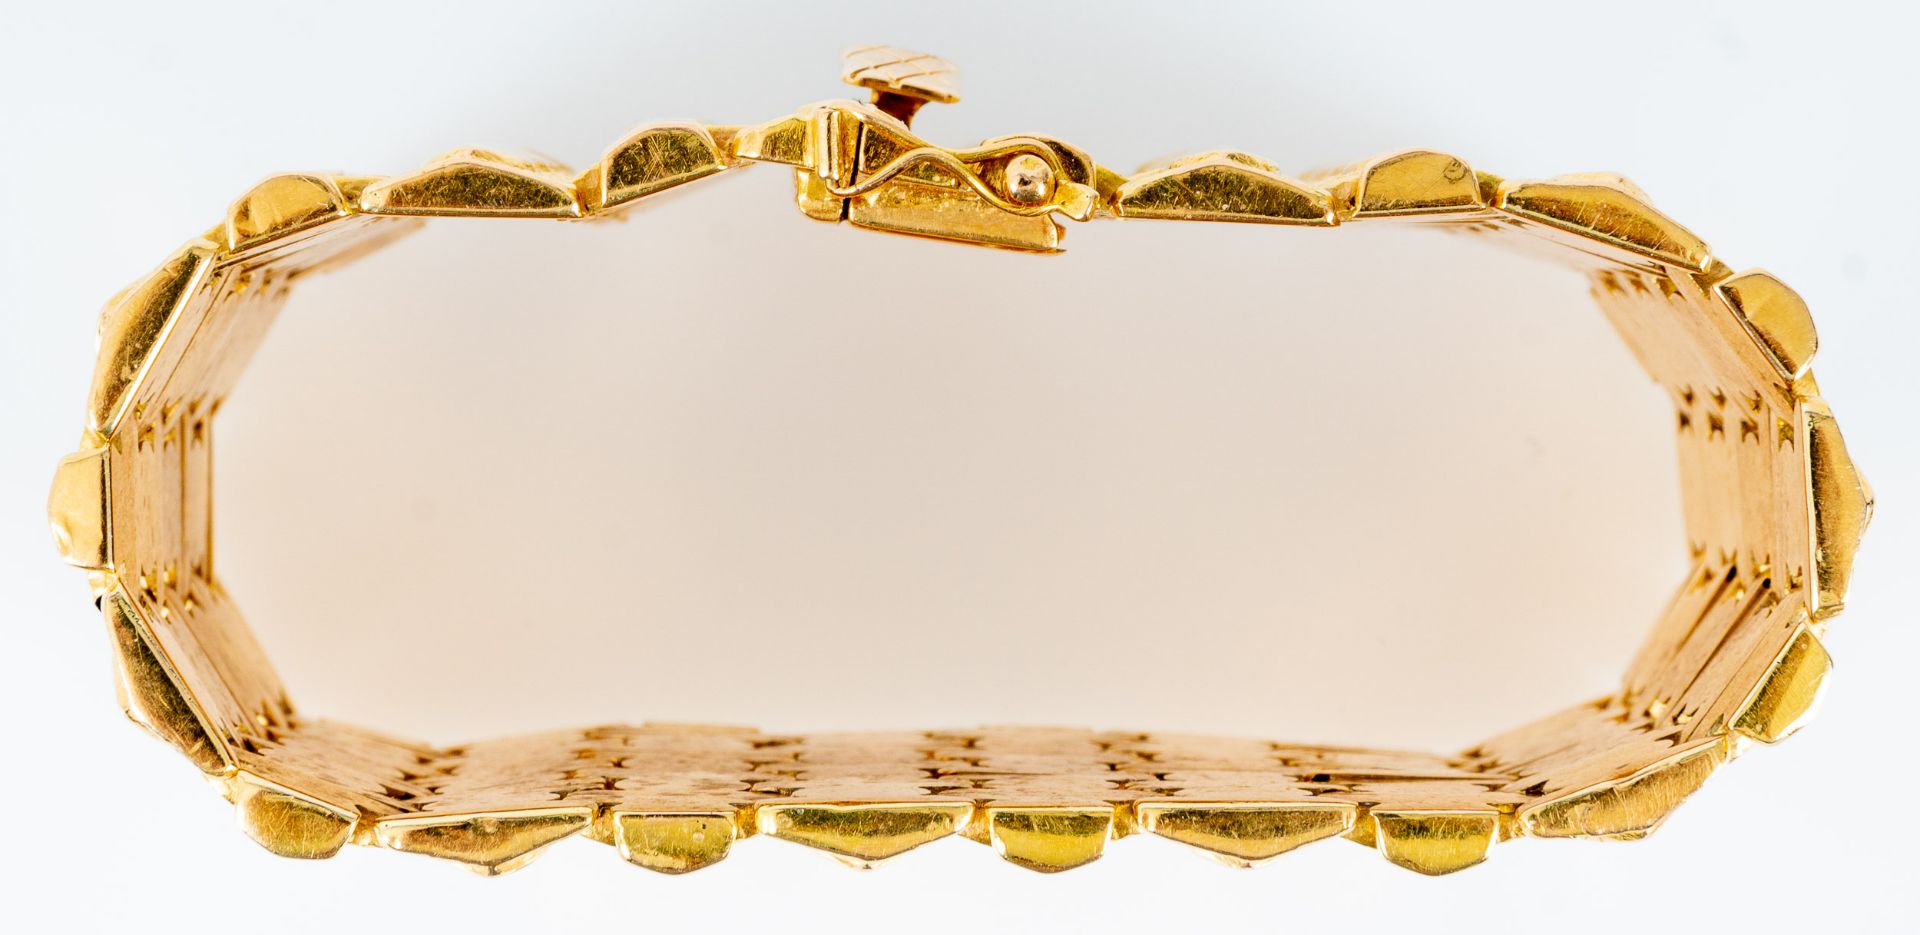 Breites Armband, sogen. "Teppich" - Armband aus 750er Gelbgold, gestempelt: "262 VI IALE 750"; ca.  - Bild 4 aus 11